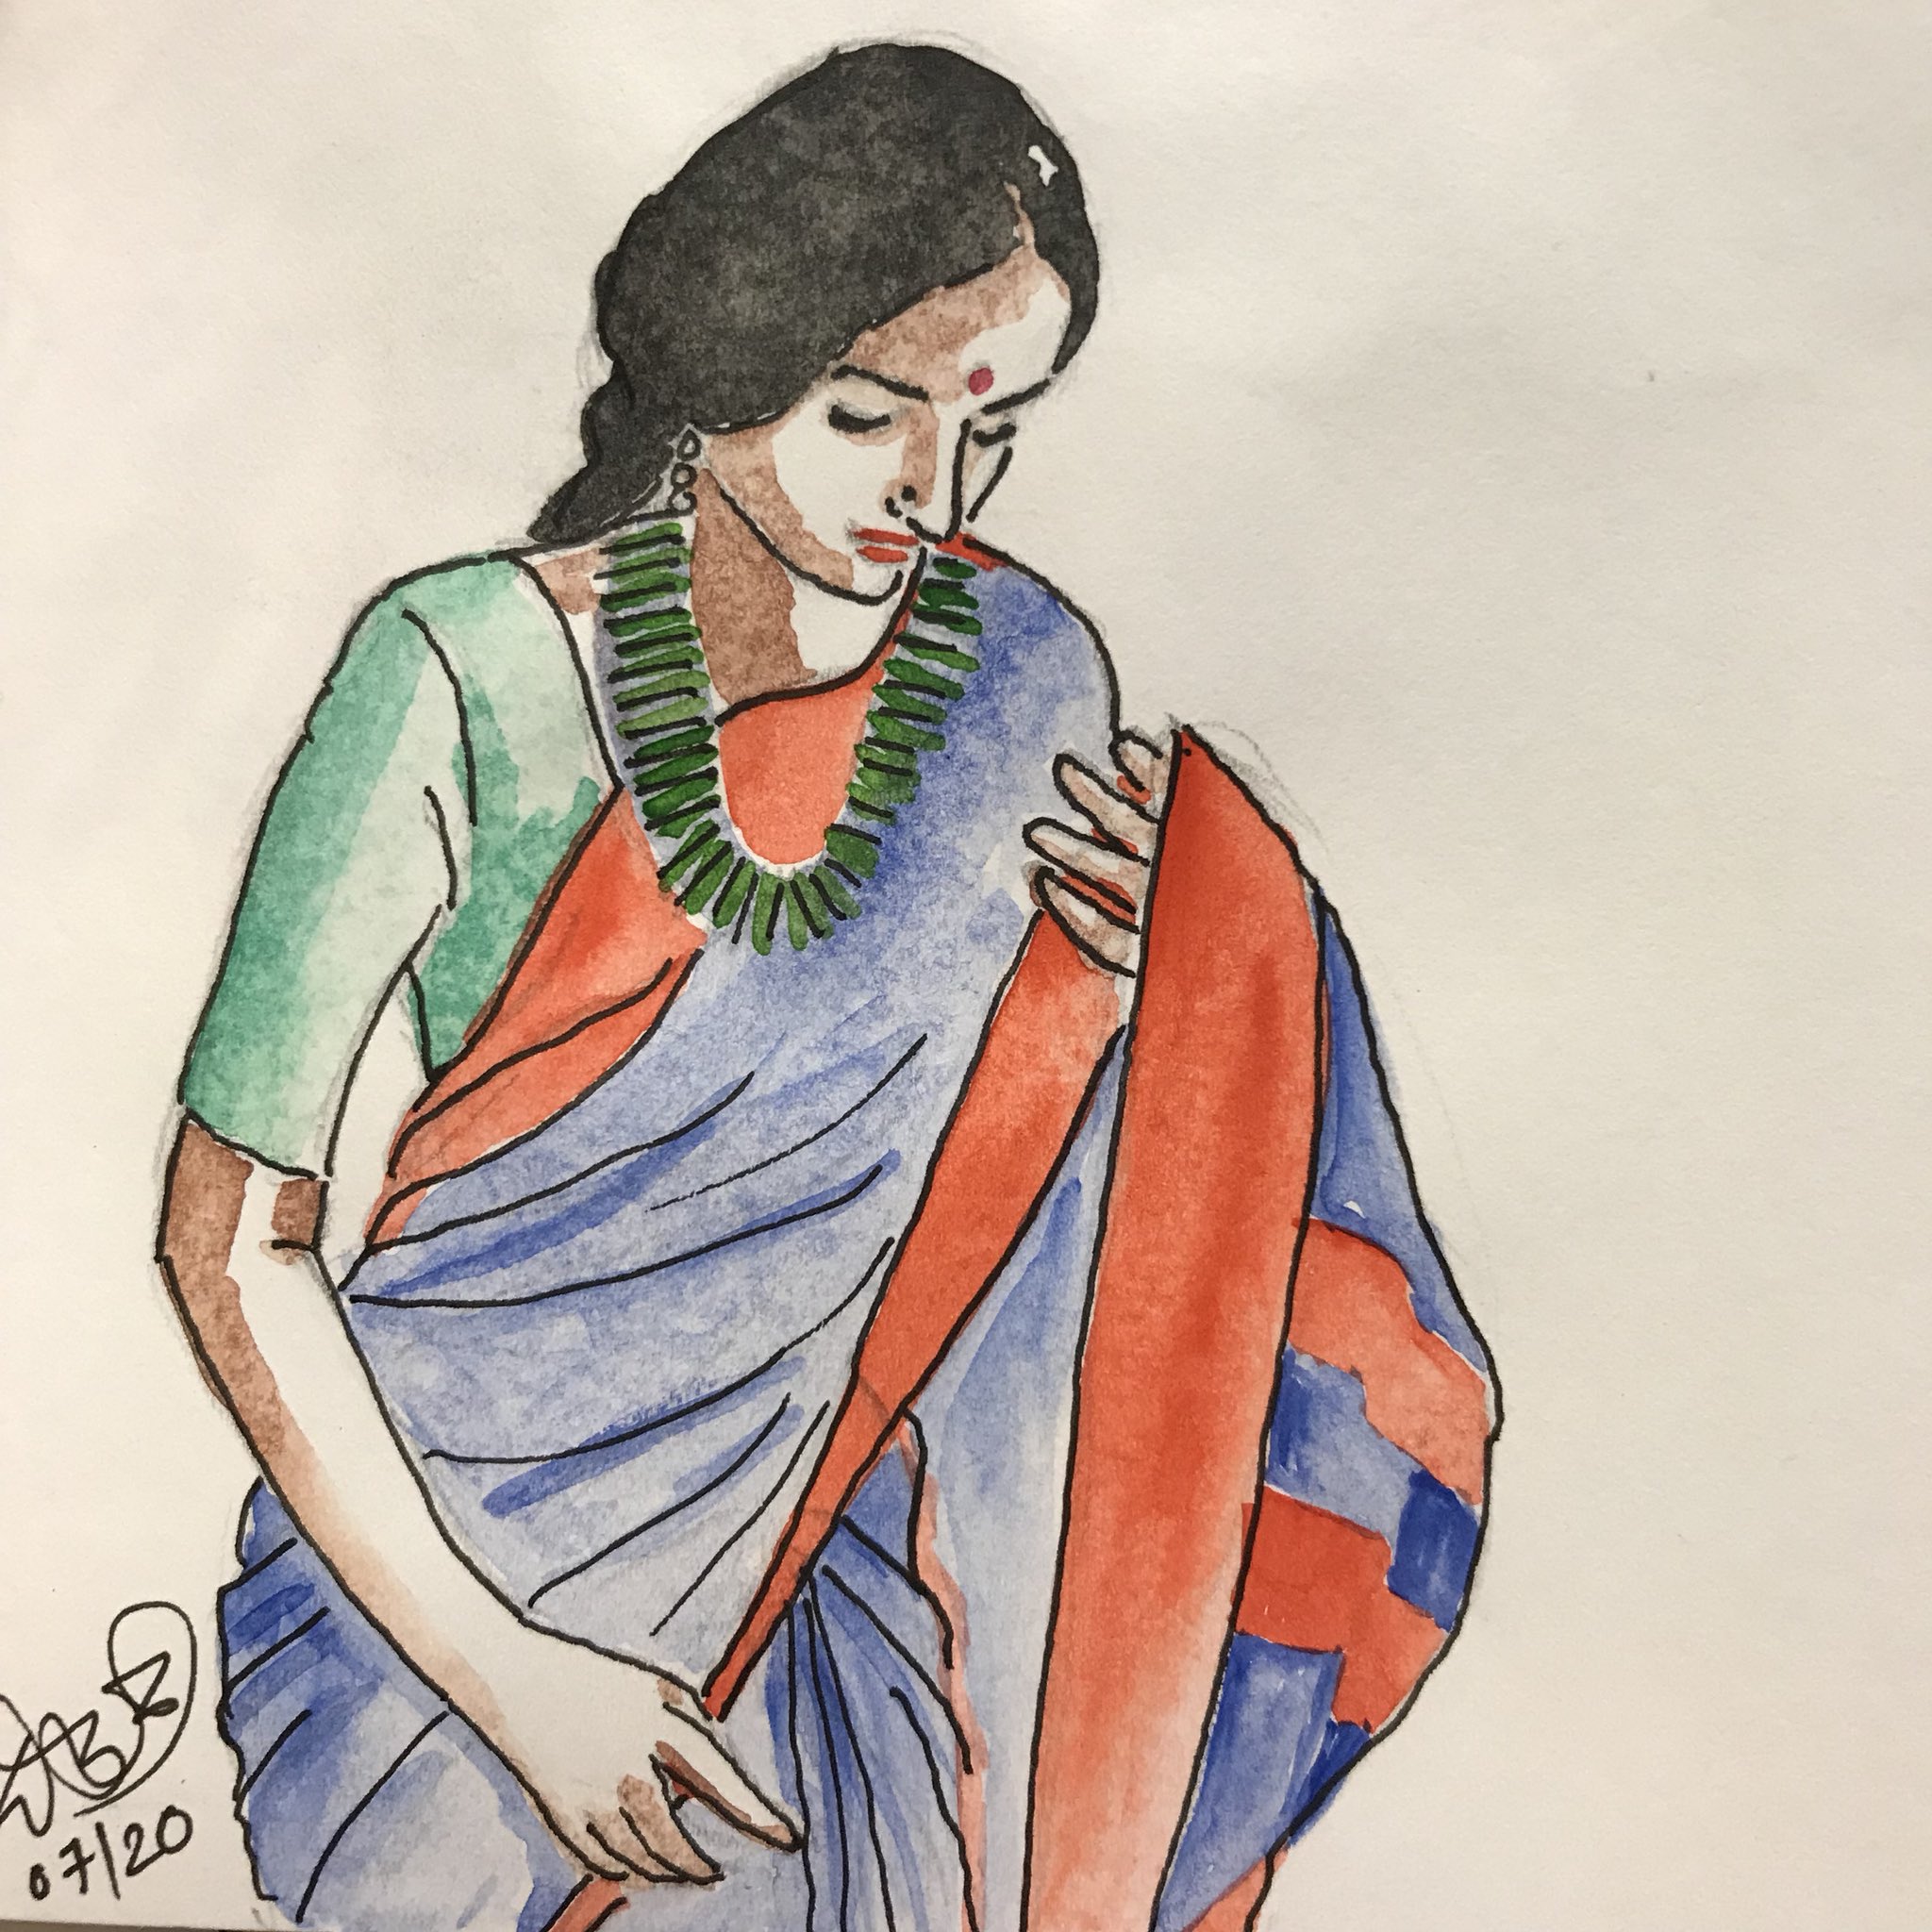 Indian girl in saree by Artsiemiss on DeviantArt